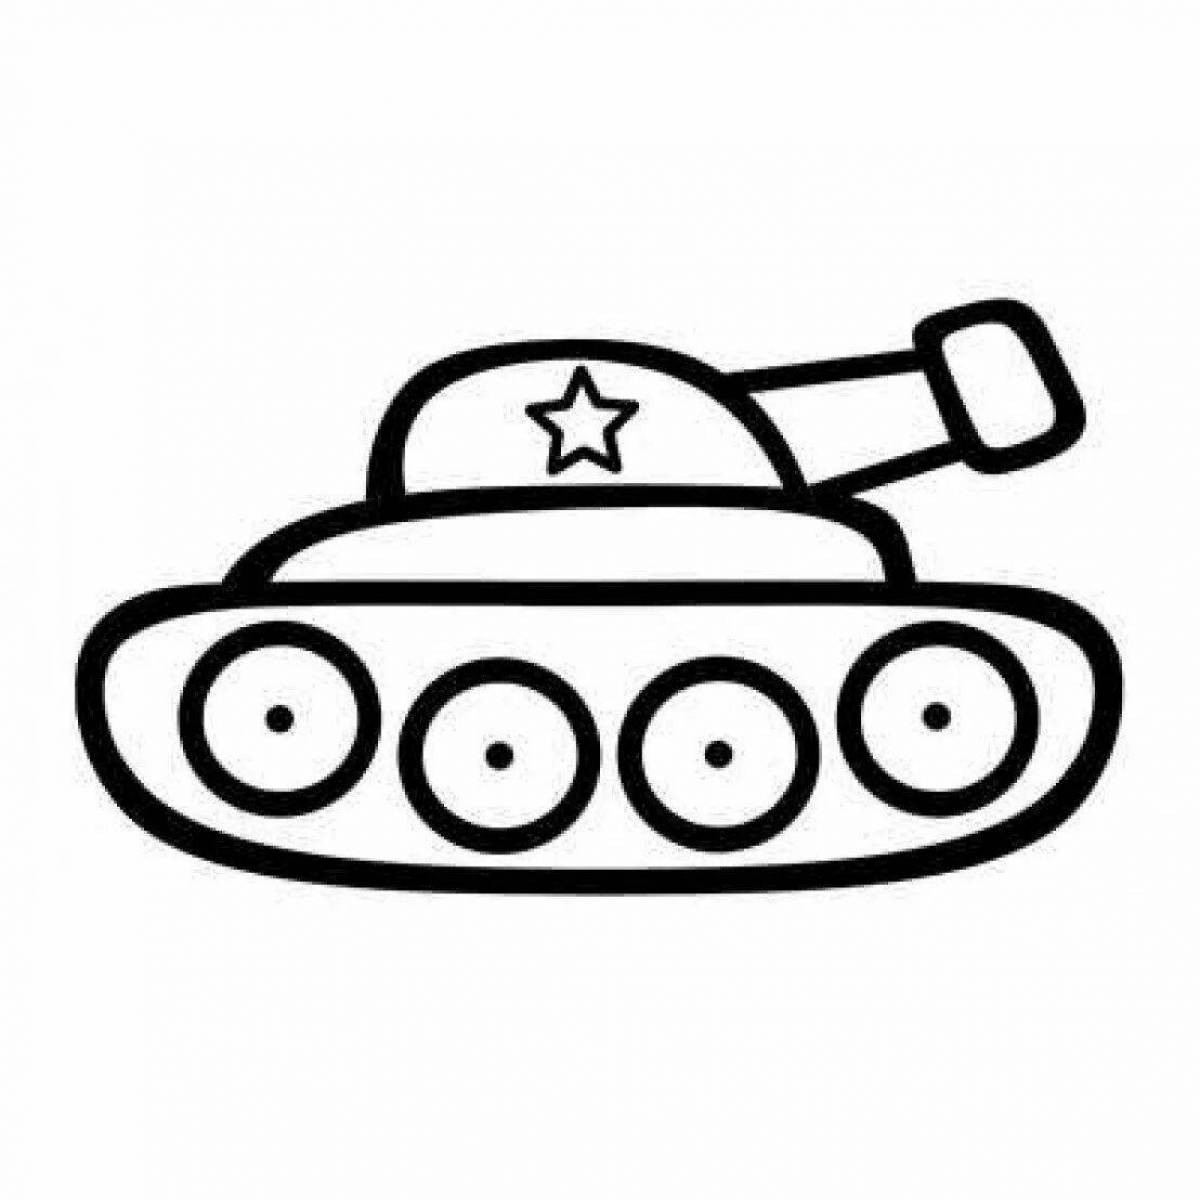 Конструктор Армия «Мини танк», 32 детали